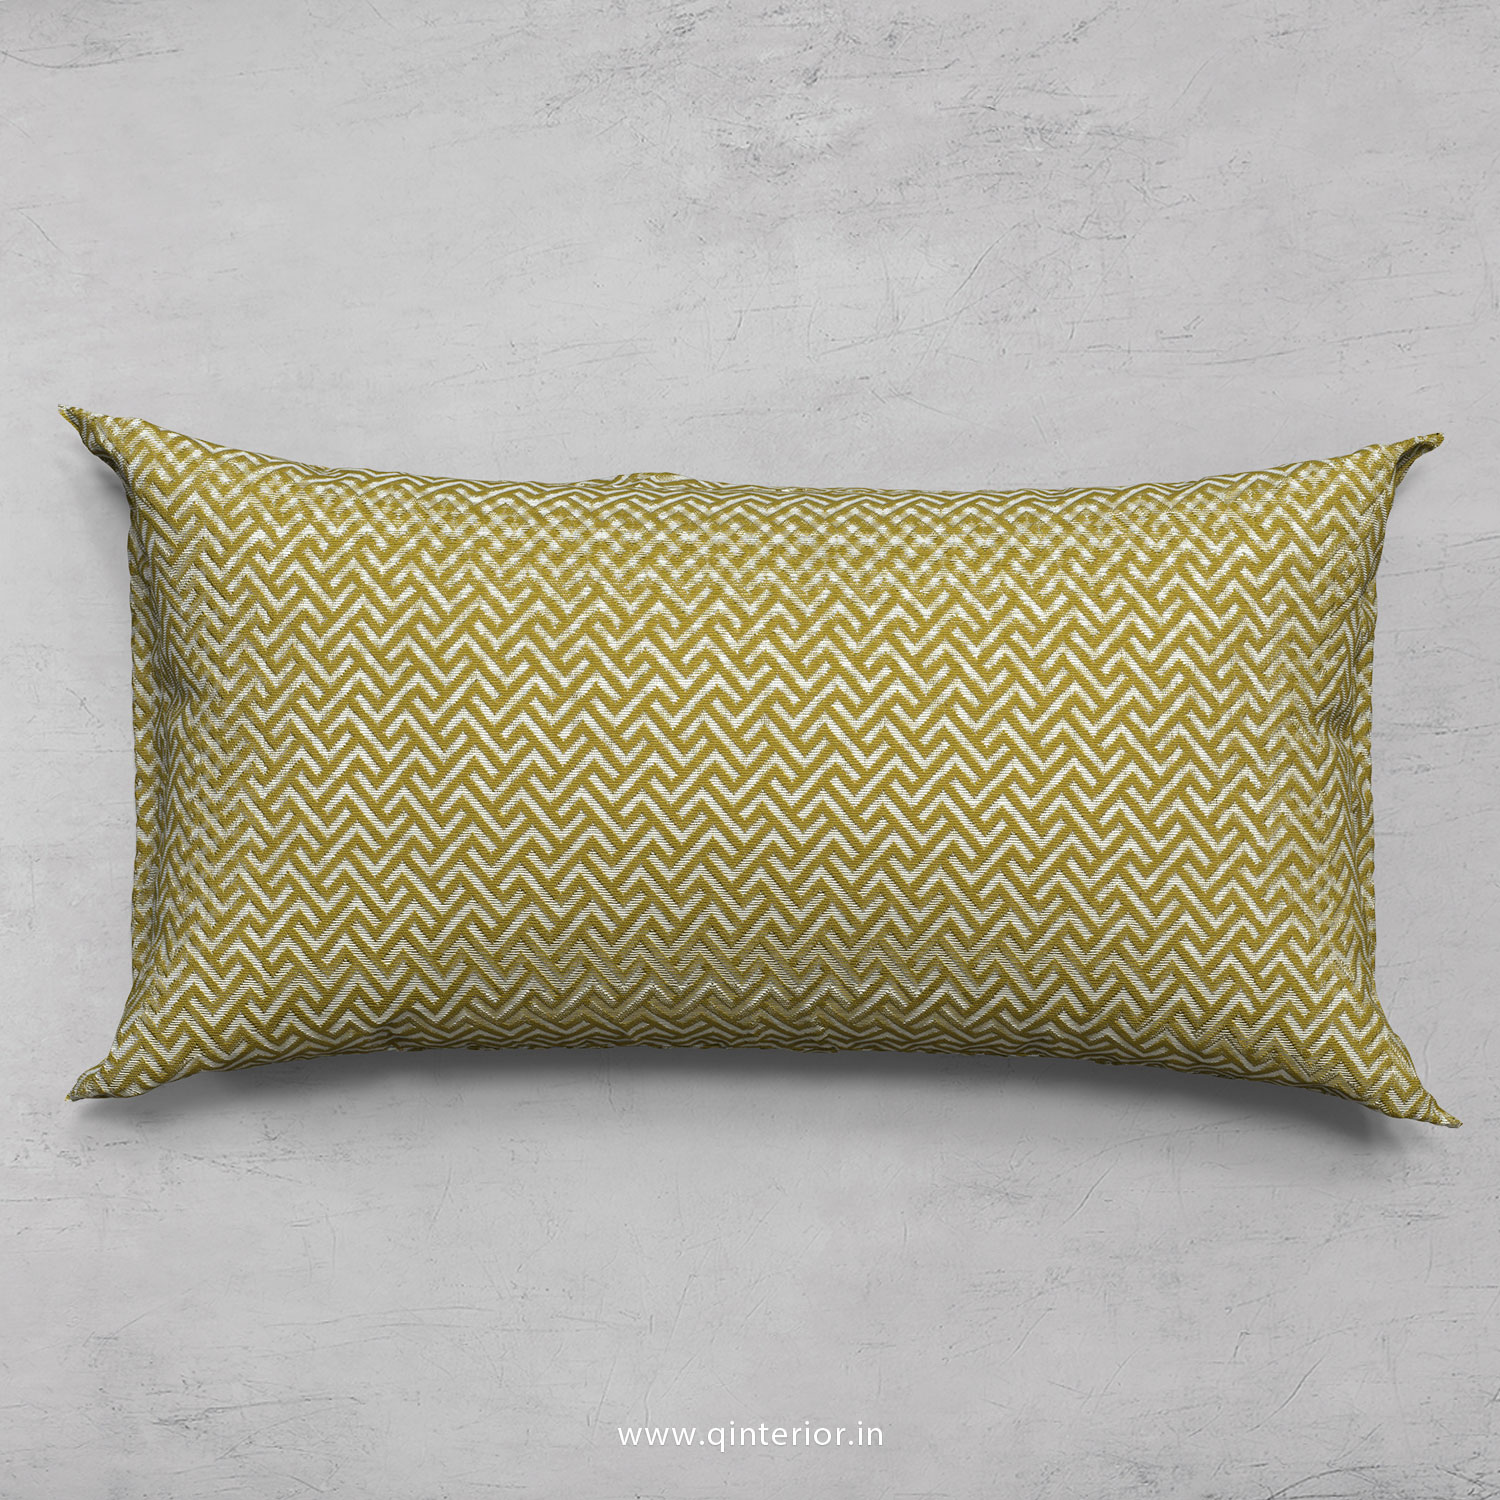 Cushion With Cushion Cover in Jacquard- CUS002 JQ06